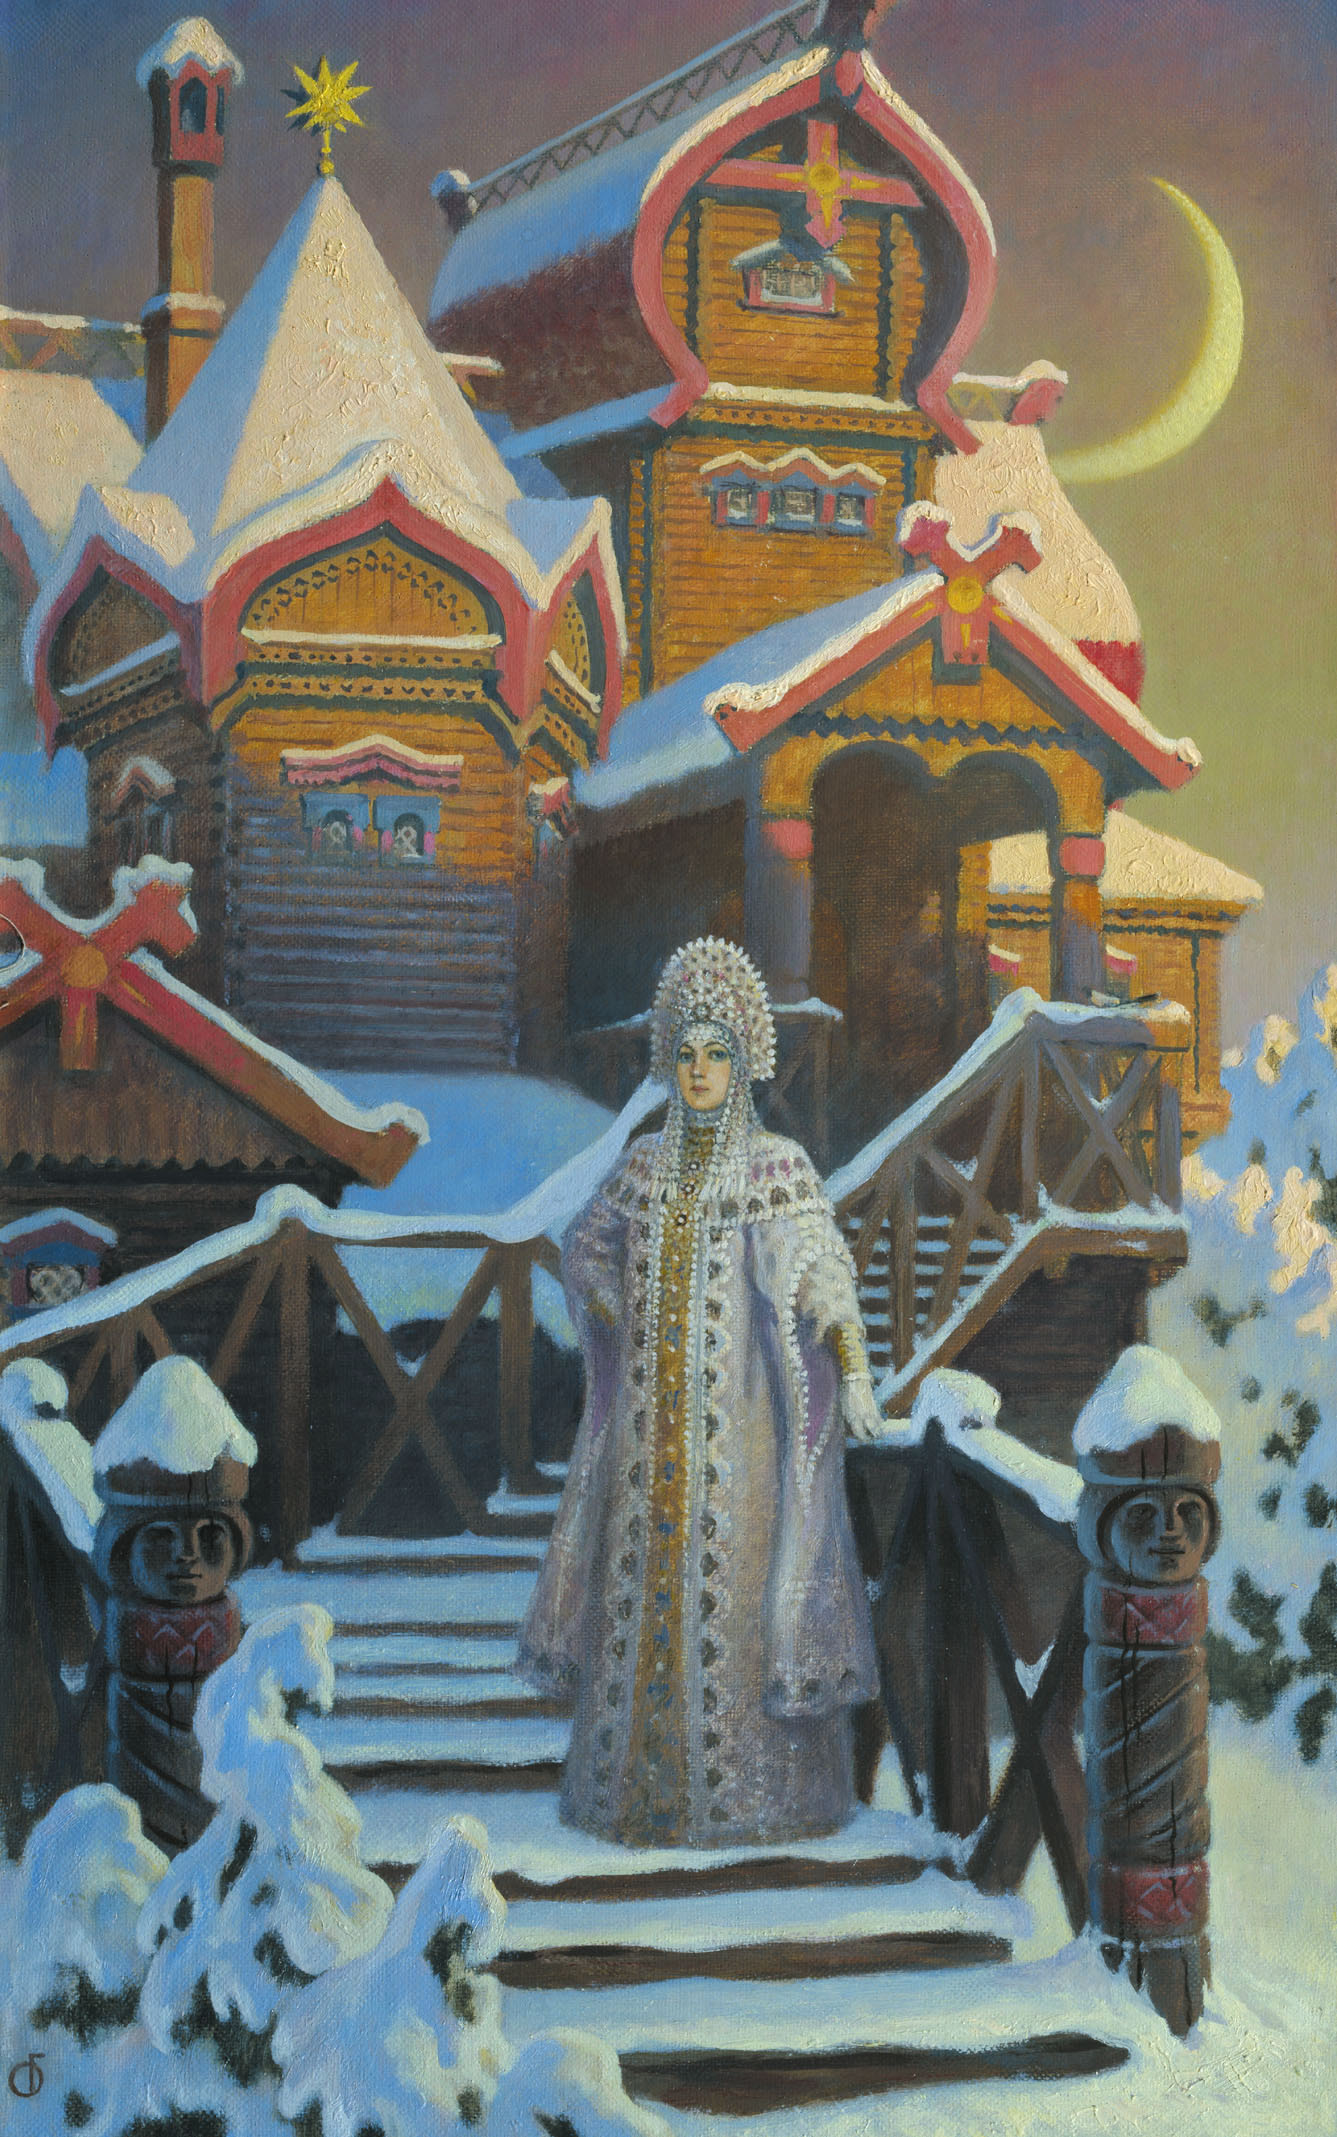 Ольшанский. Терем царевны зимы. 2004